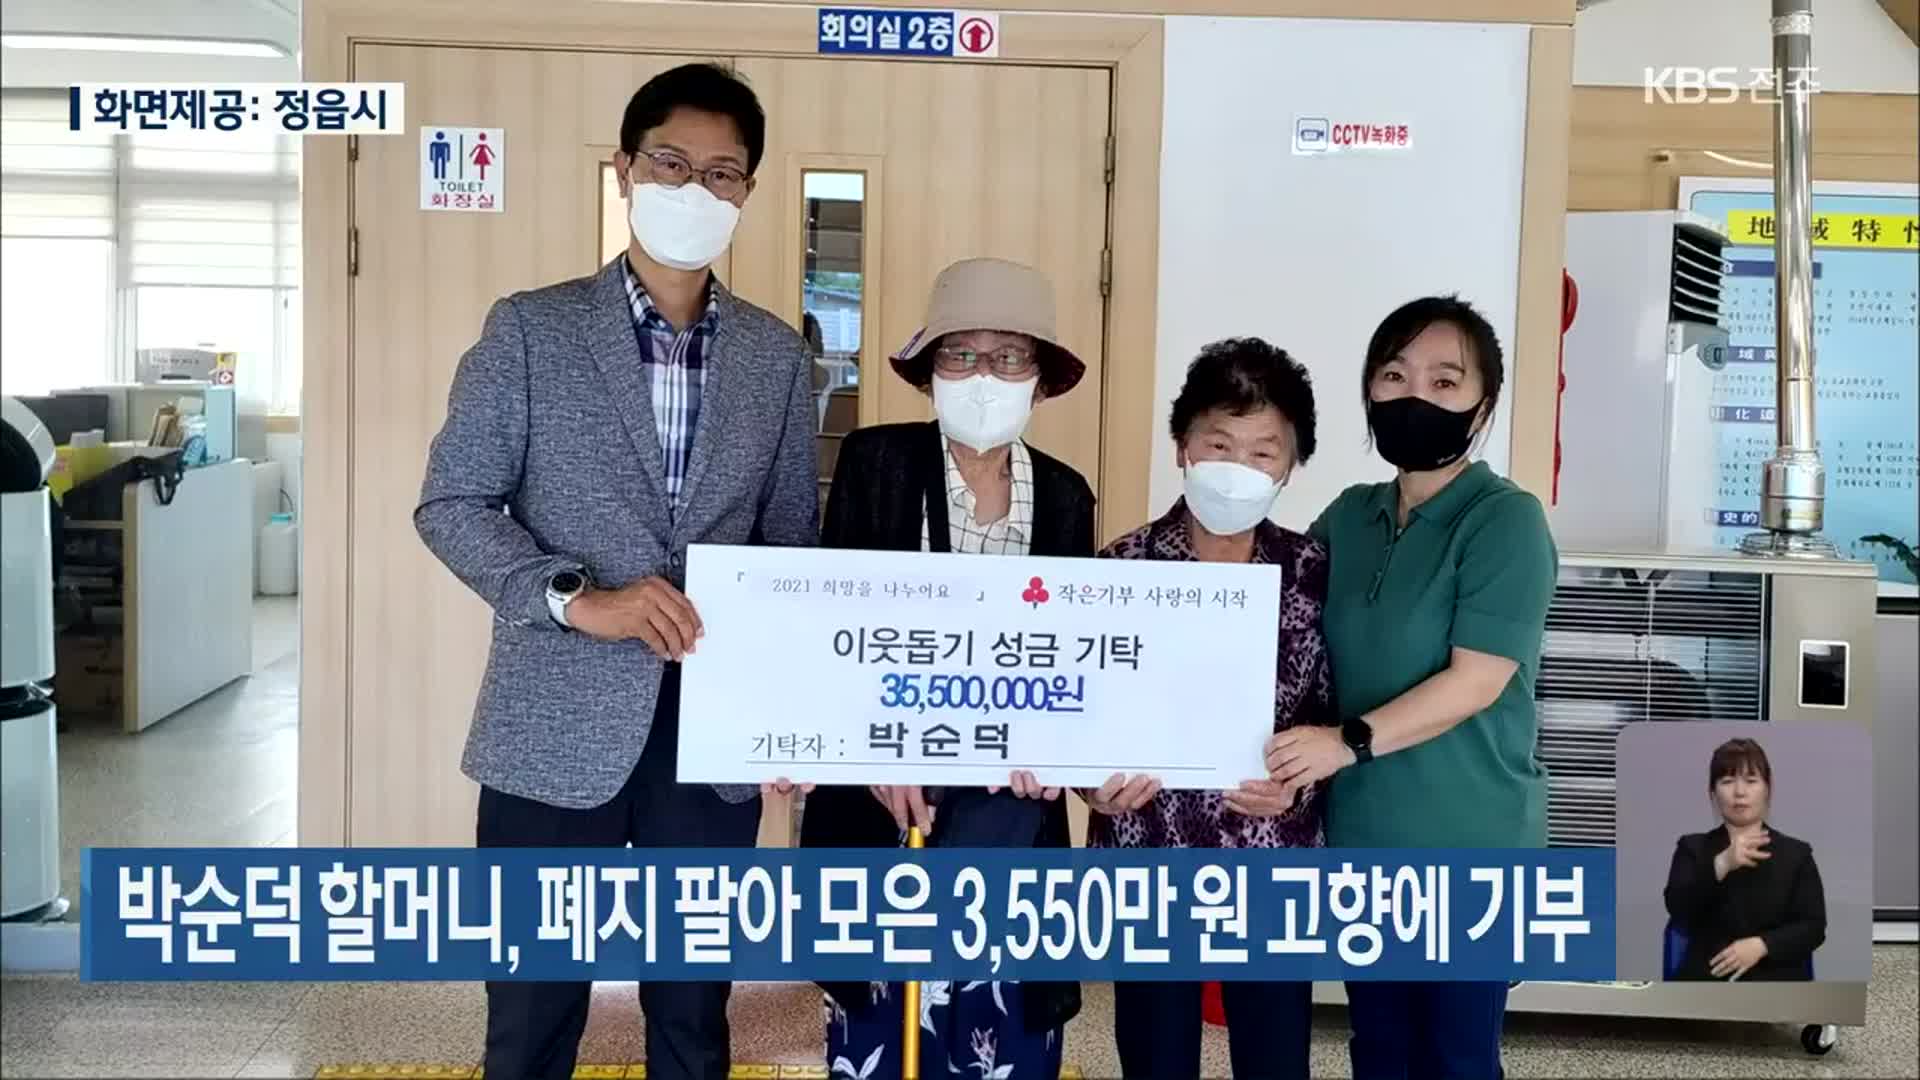 박순덕 할머니, 폐지 팔아 모은 3,550만 원 고향에 기부